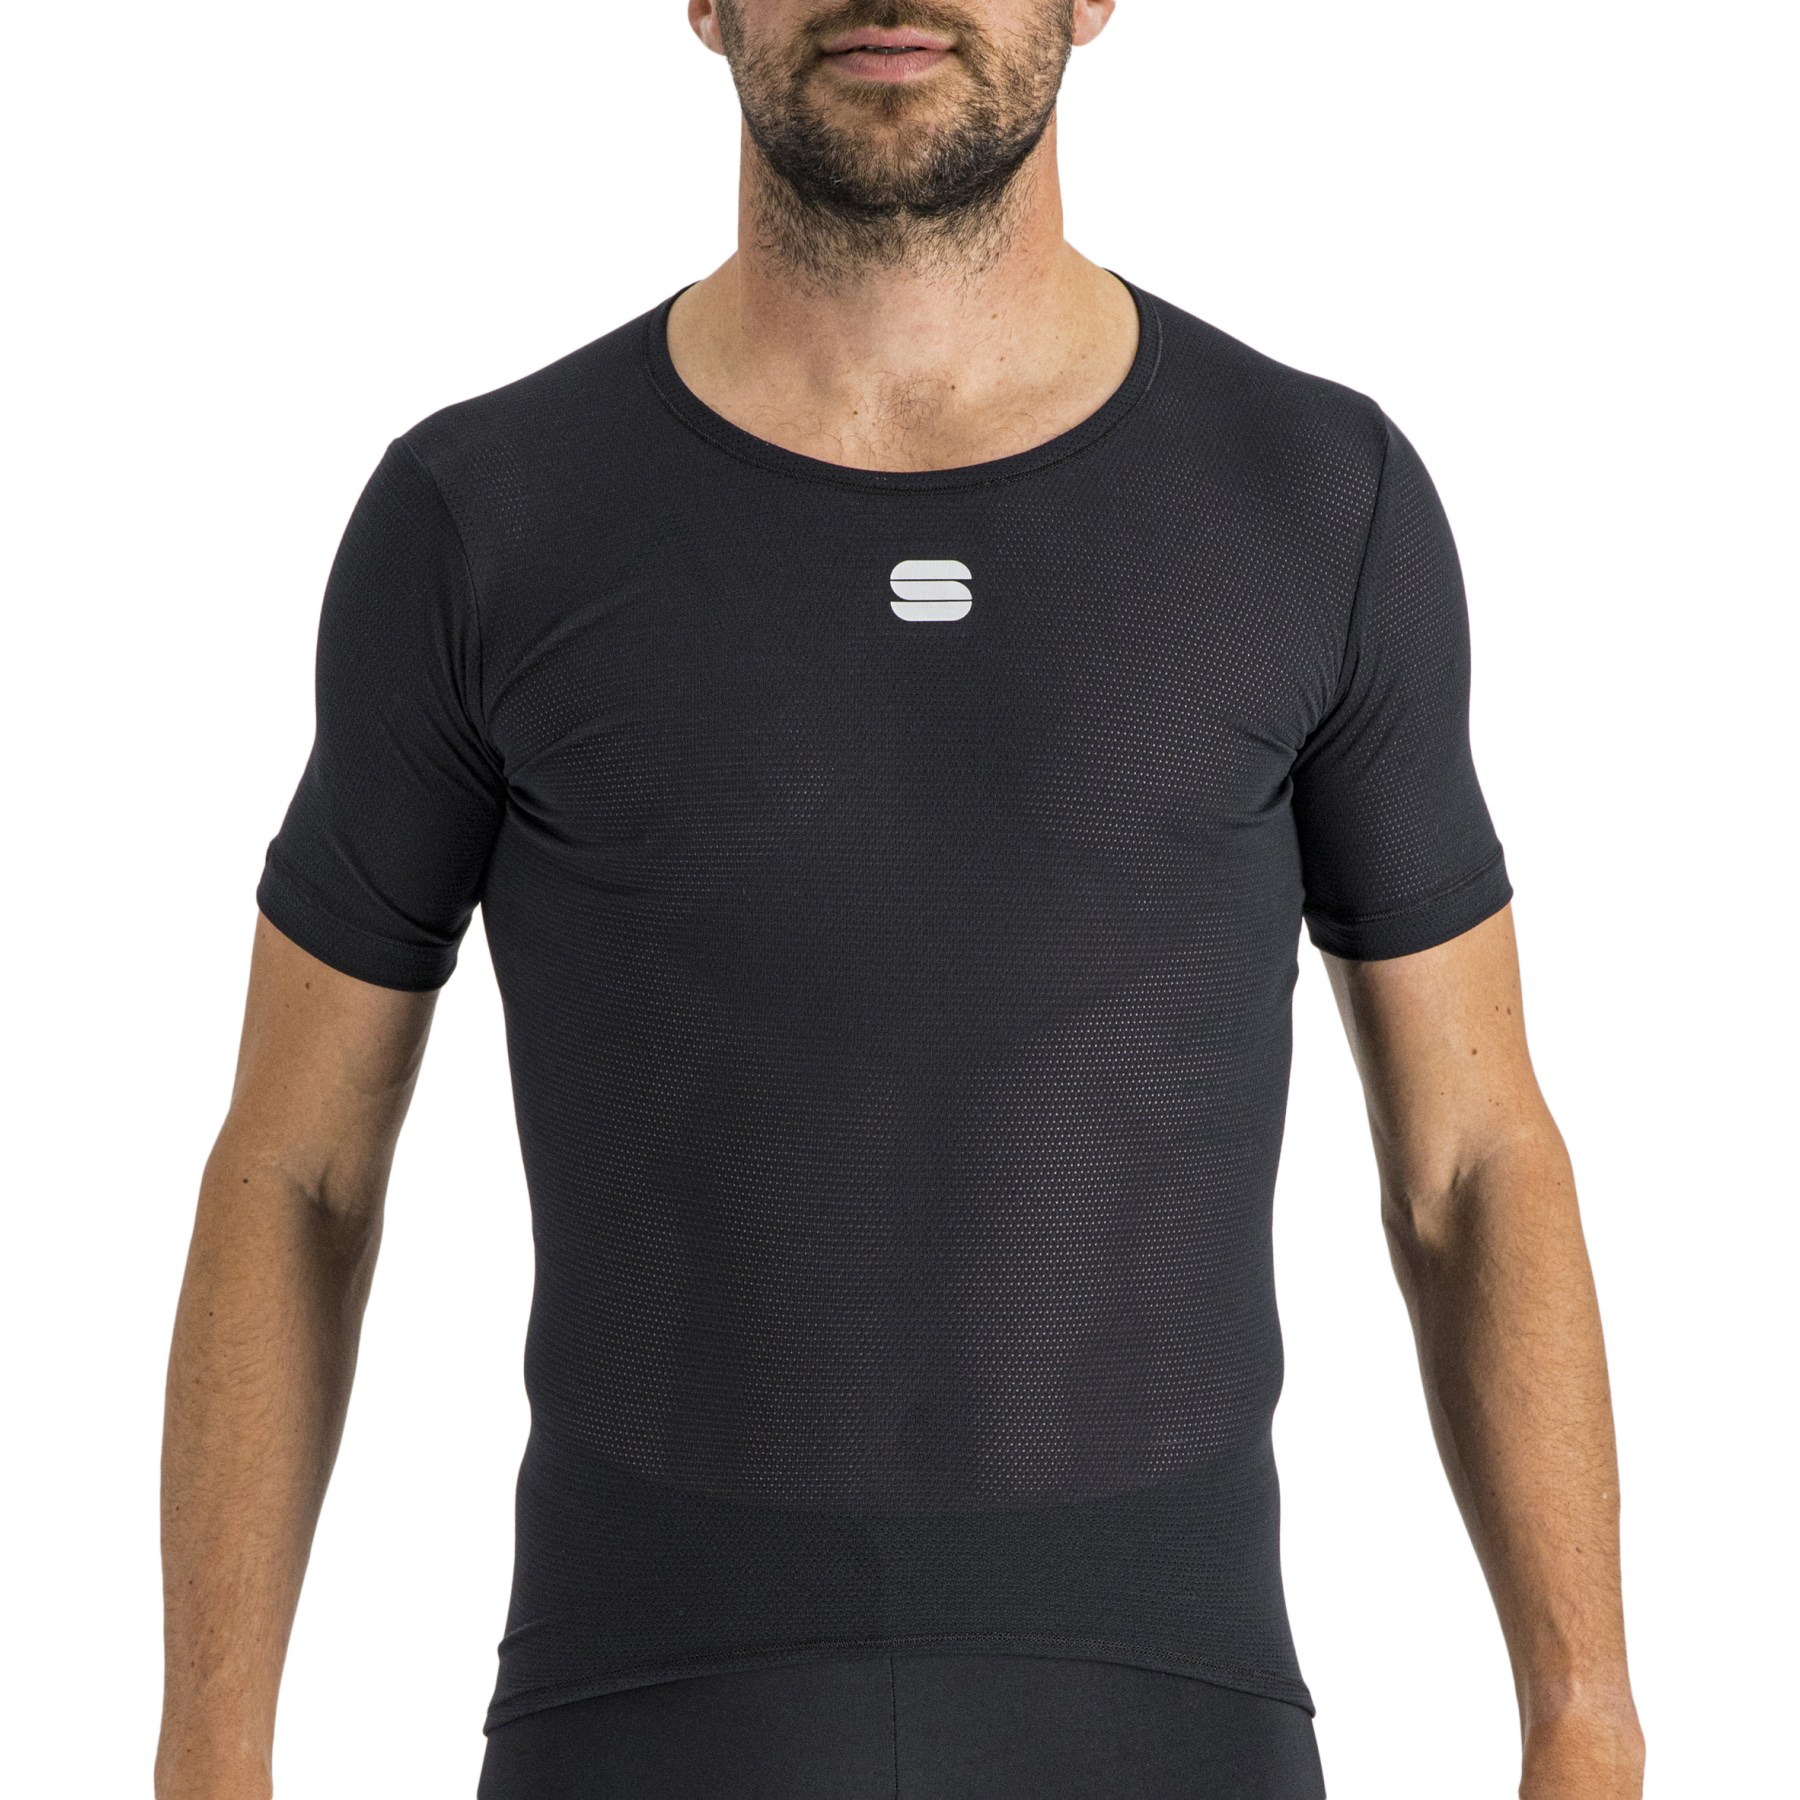 Produktbild von Sportful Thermodynamic Lite T-Shirt - 002 Schwarz